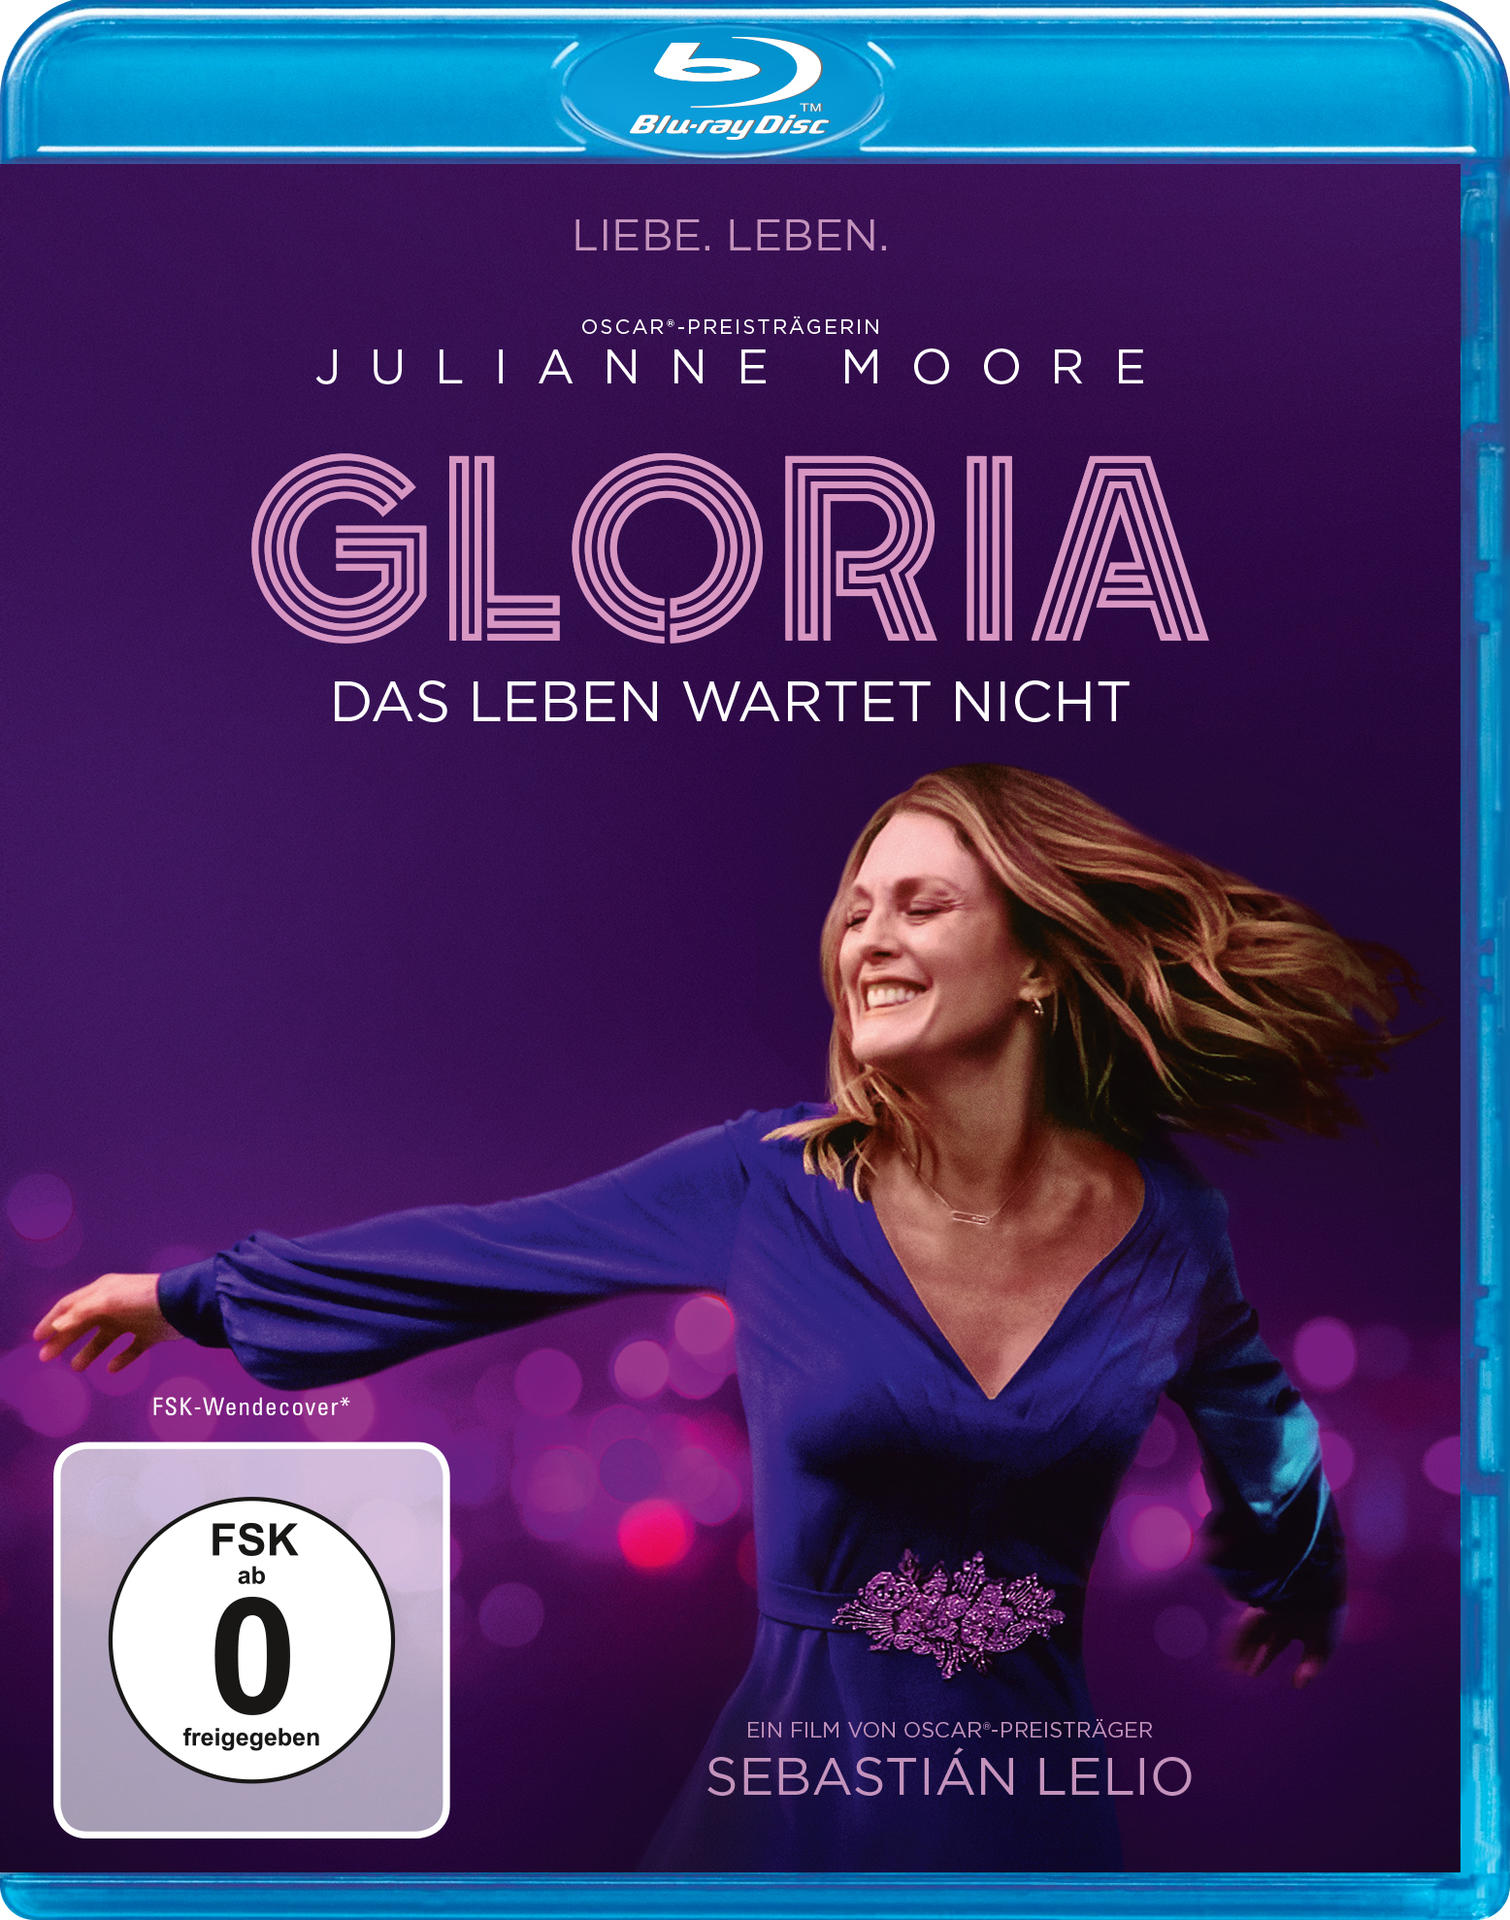 Gloria - Das nicht Blu-ray Leben wartet